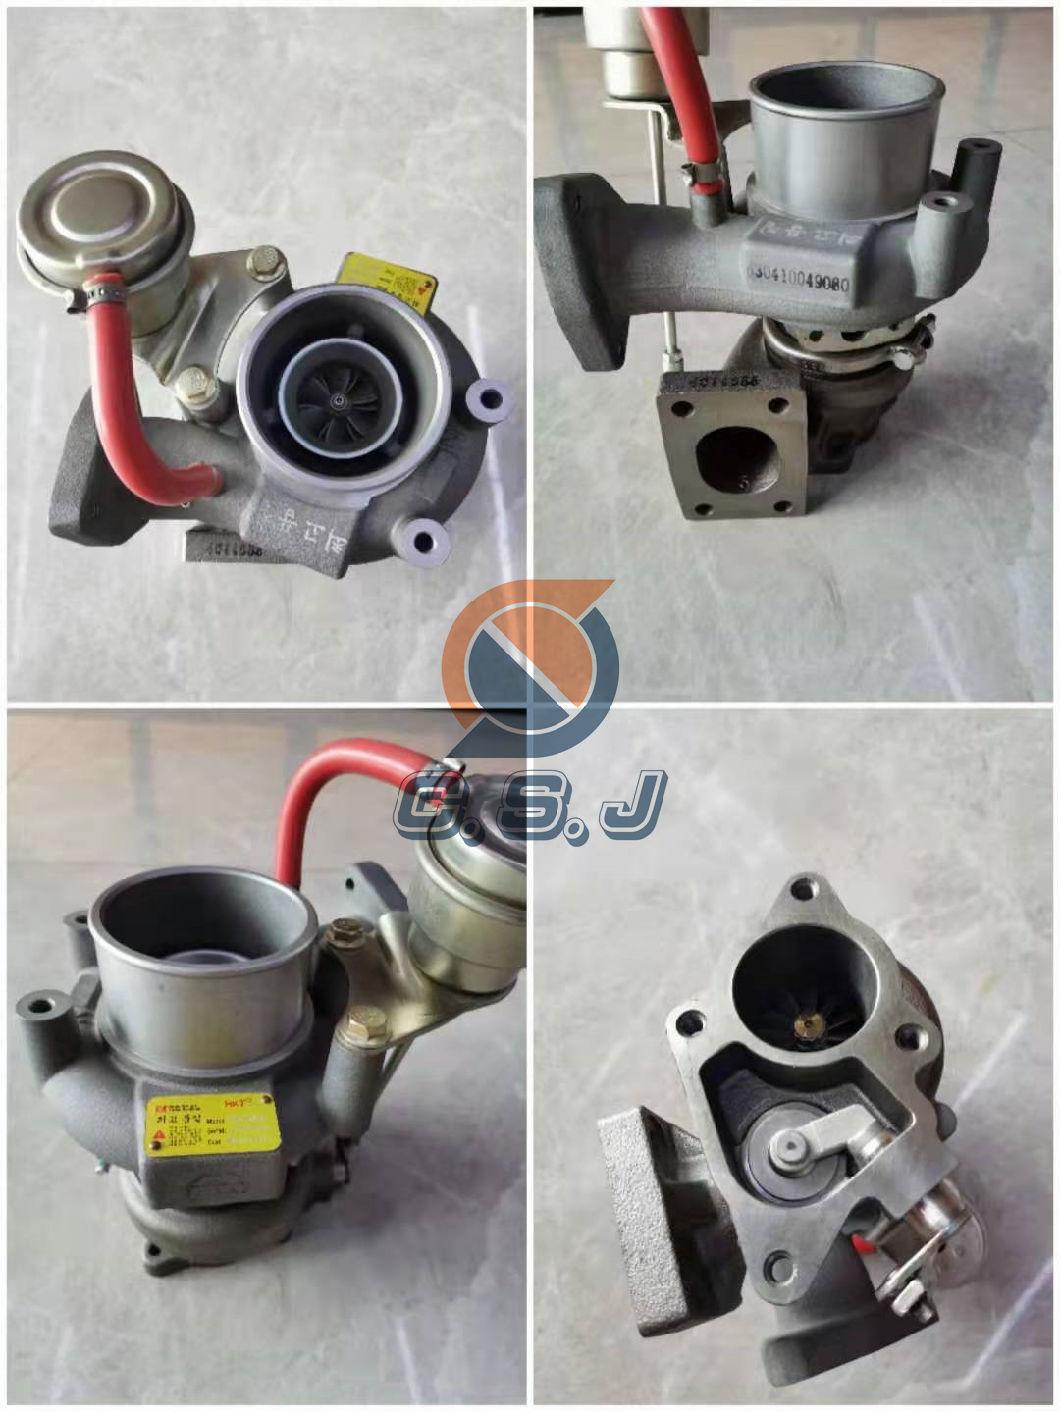 Engine Model S4K Turbocharger for Excavator E312 Part Number 49179-02260